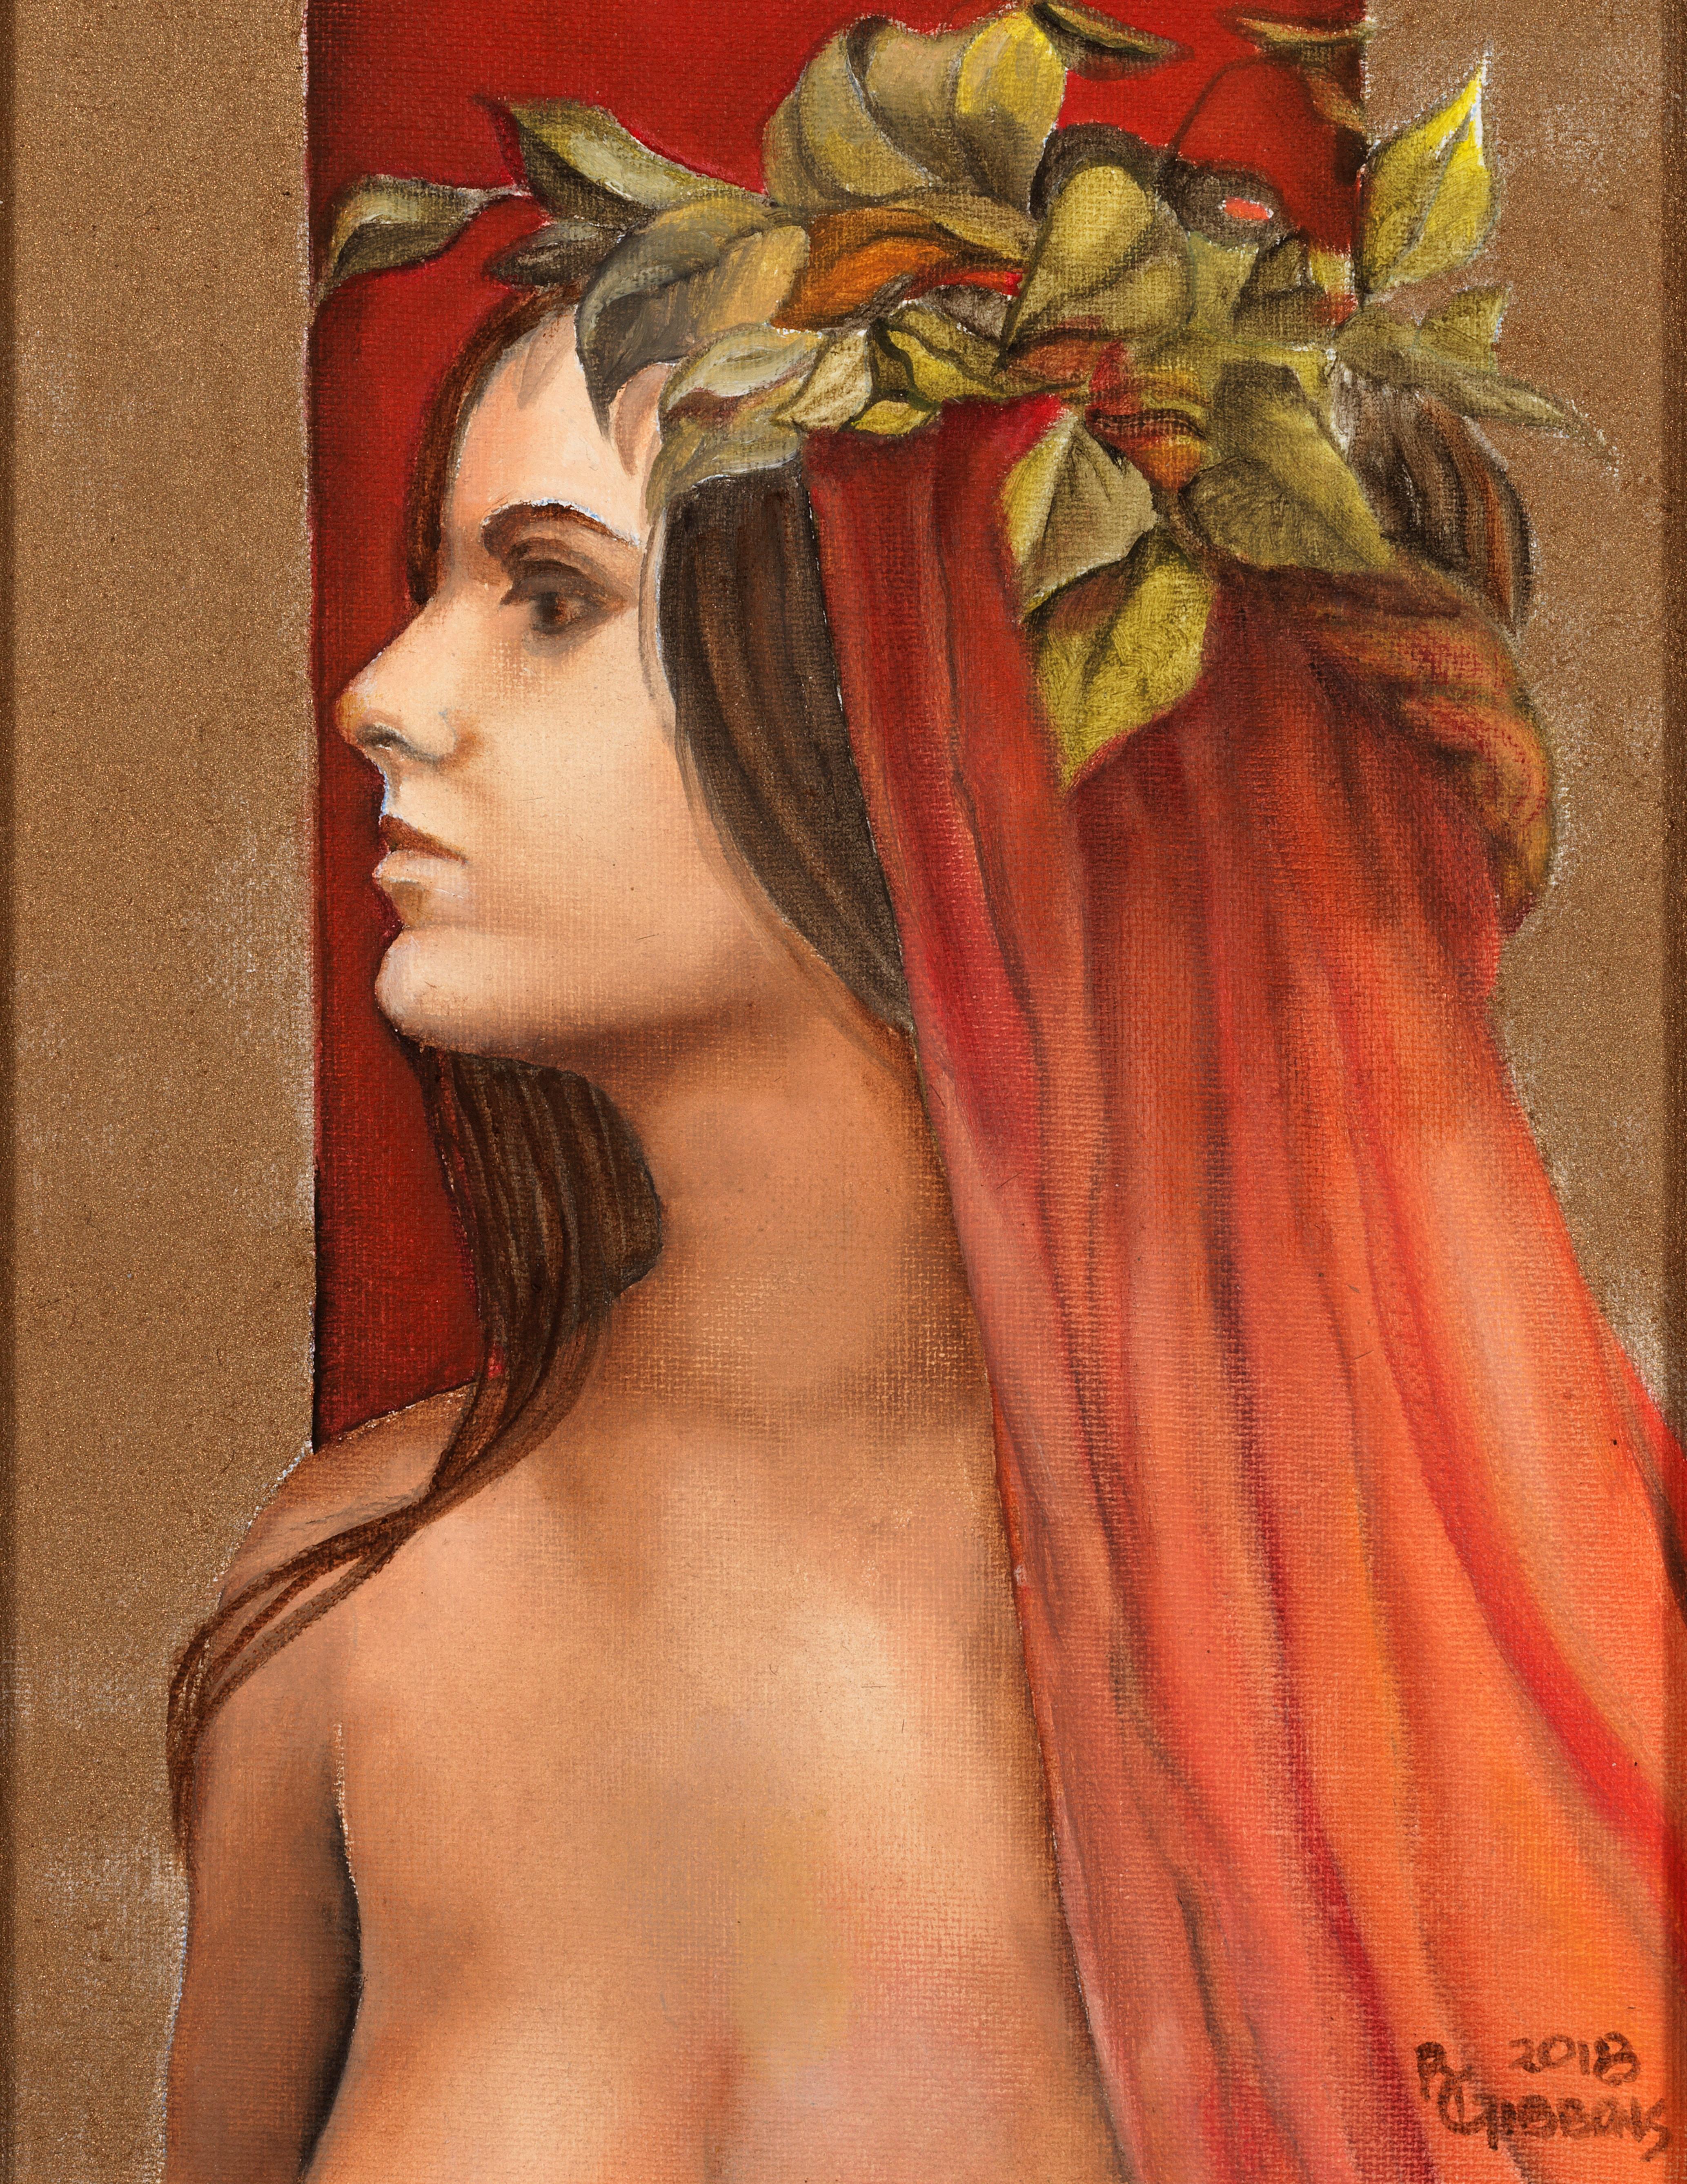 Unschuld - Junge weibliche Göttin mit rosafarbener und orangefarbener Schleppe und rotem Hintergrund – Painting von Richard Gibbons